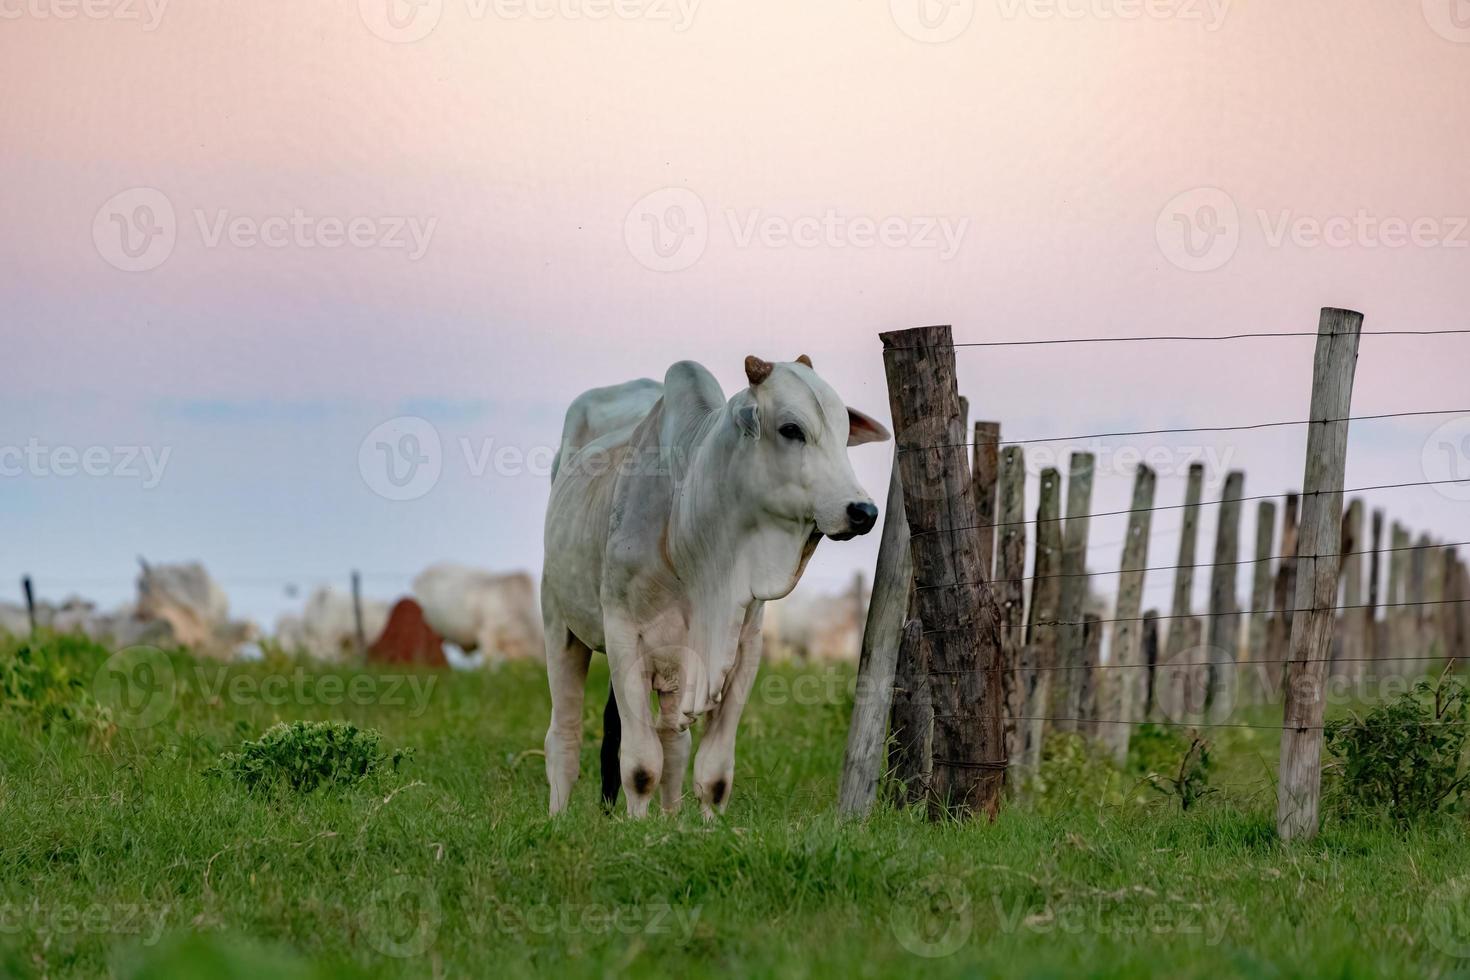 vaca branca criada em uma fazenda foto